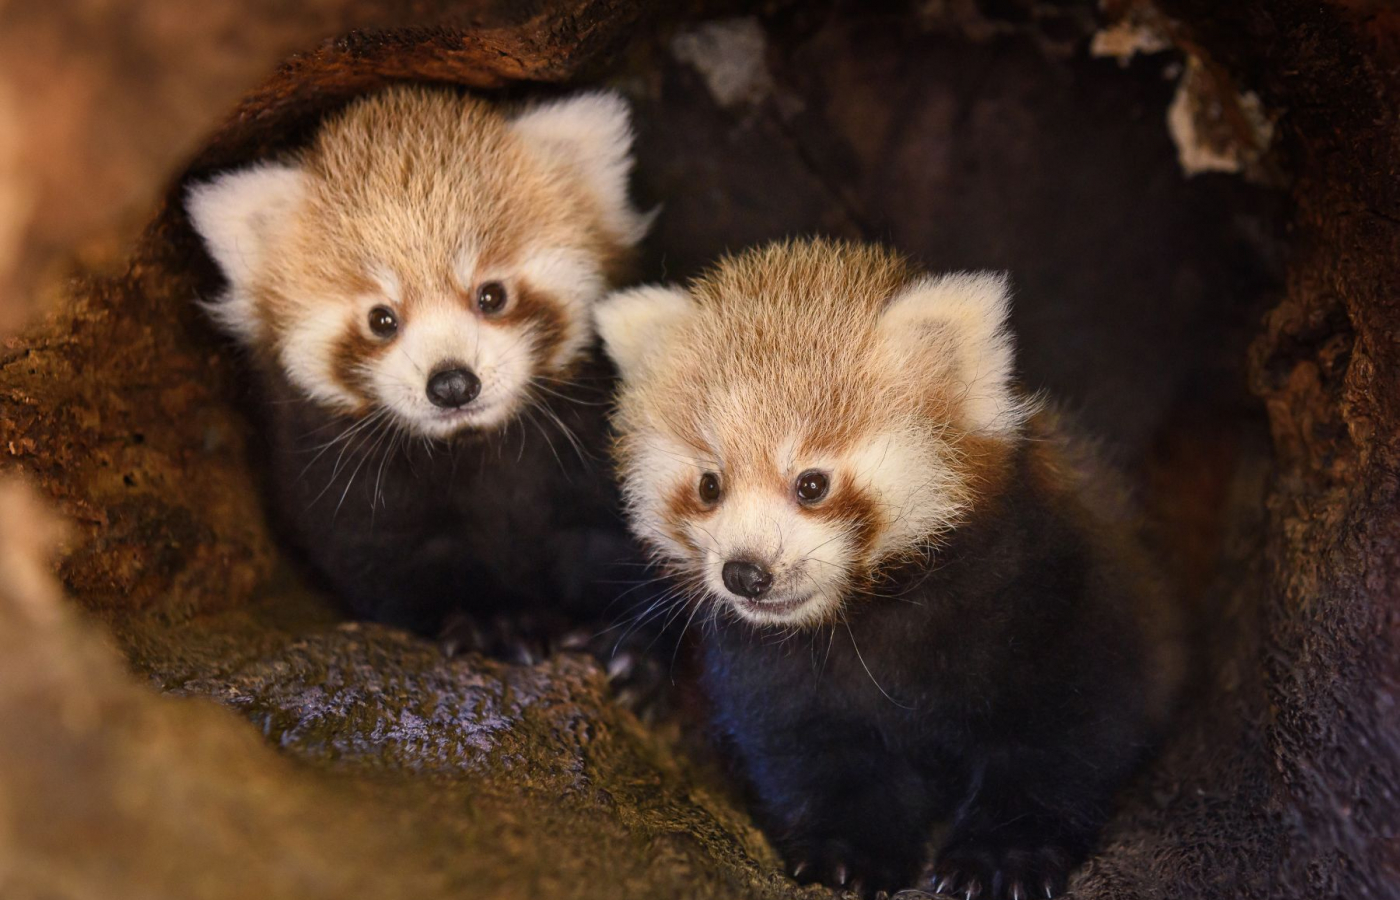 Dvojčata pandy červené